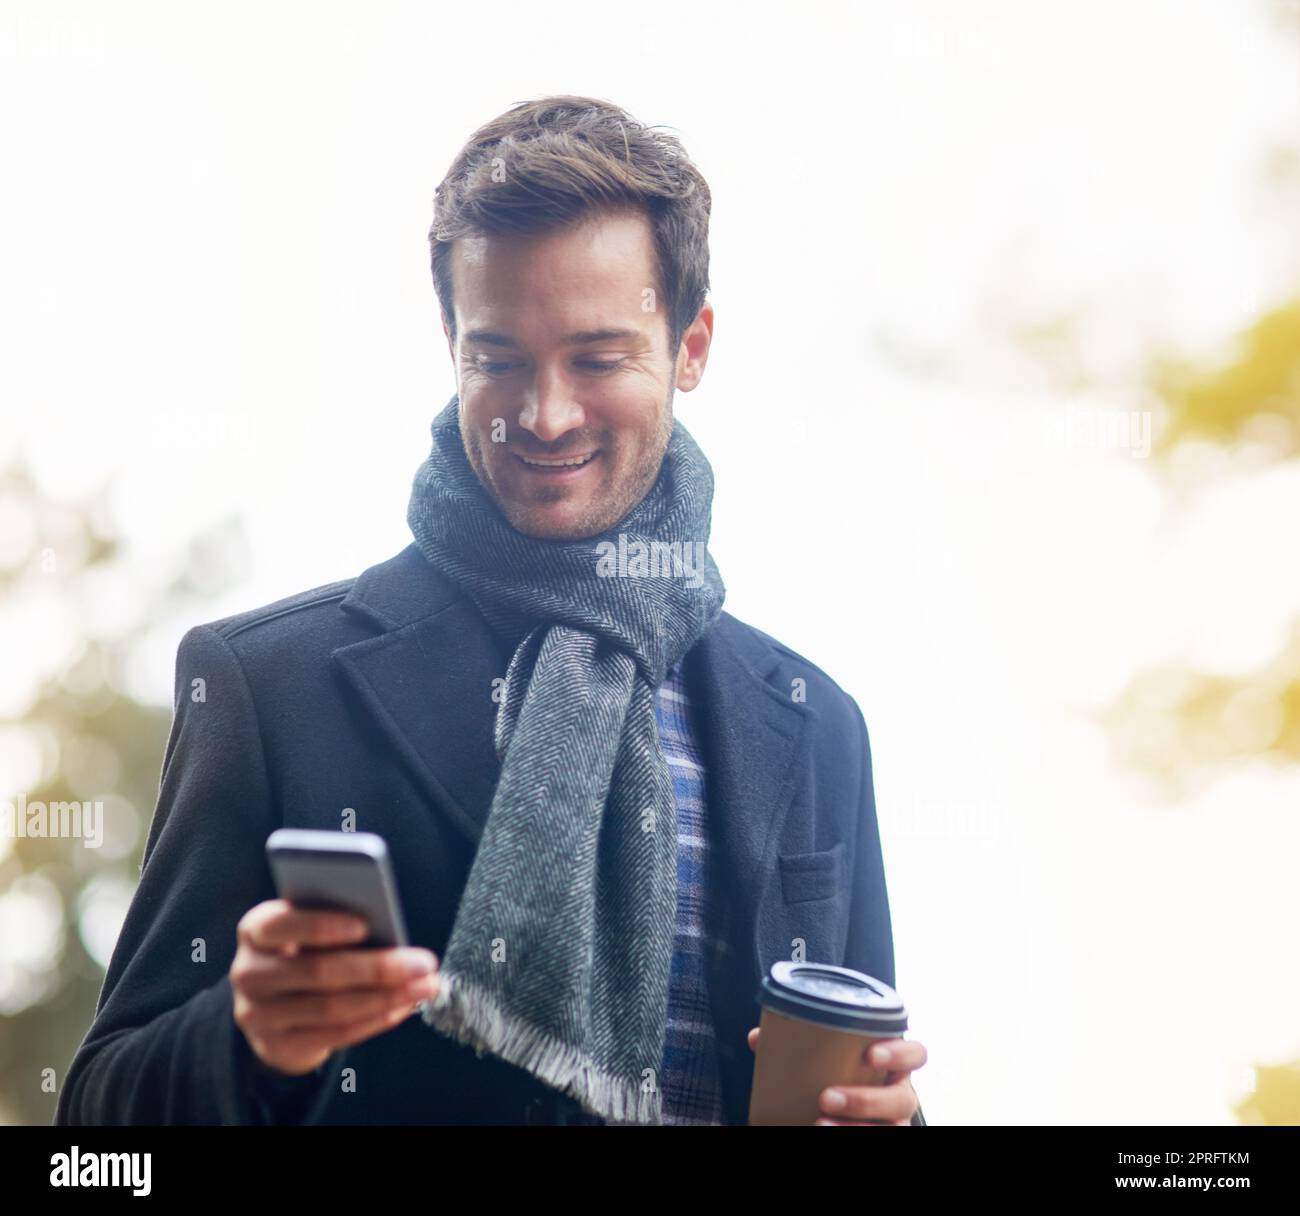 Messagerie instantanée pour des conversations en temps réel. Un jeune homme utilisant son téléphone à l'extérieur. Banque D'Images